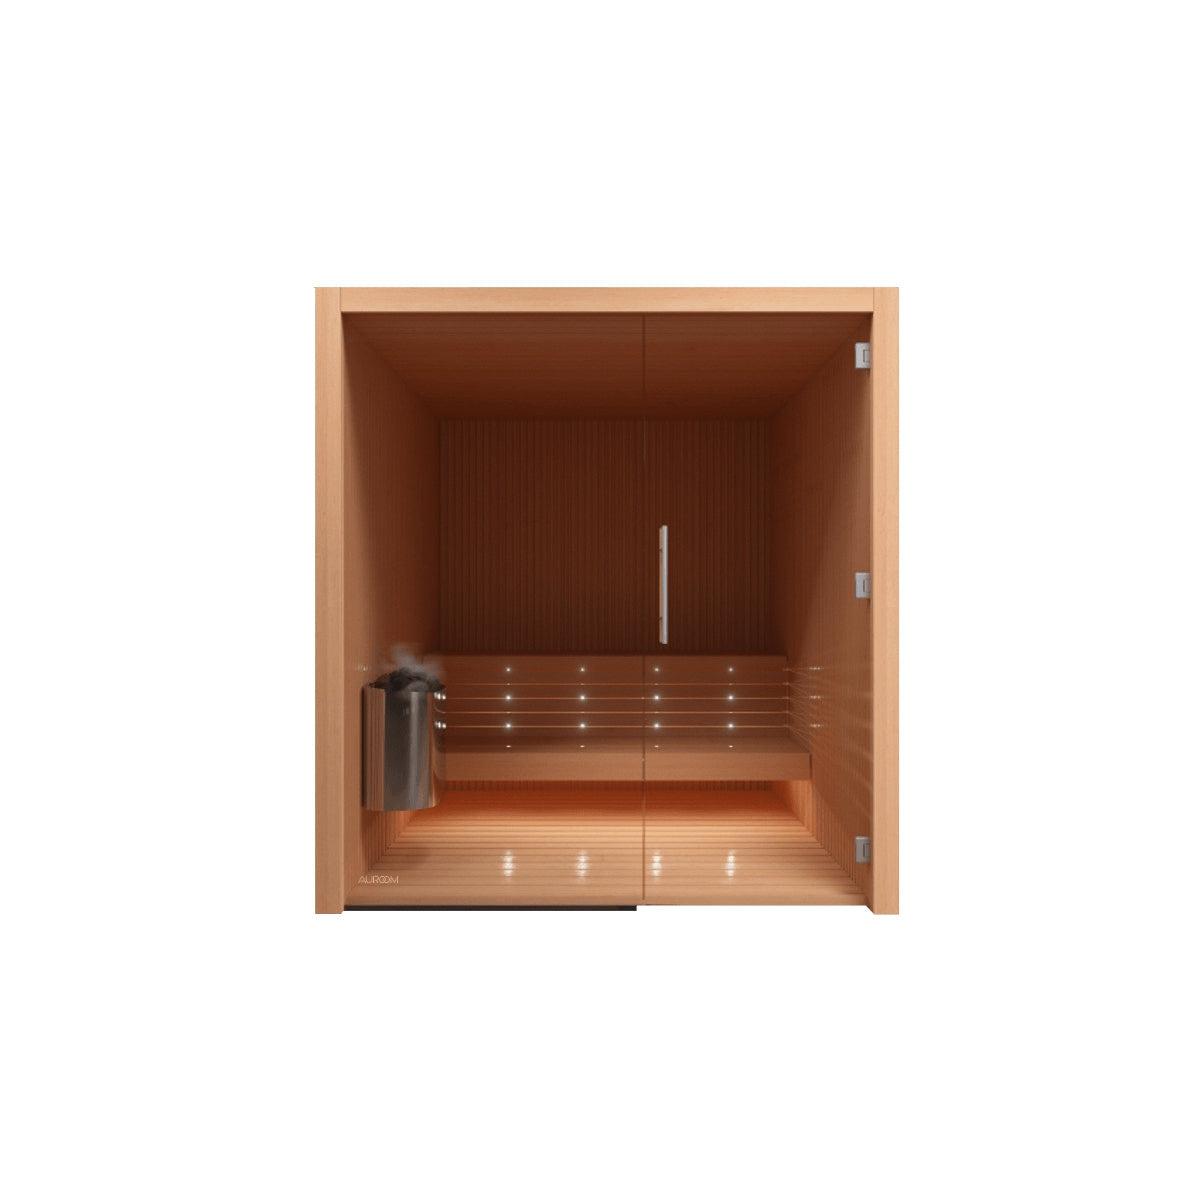 Libera Glass DIY Sauna Cabin Kit - Purely Relaxation